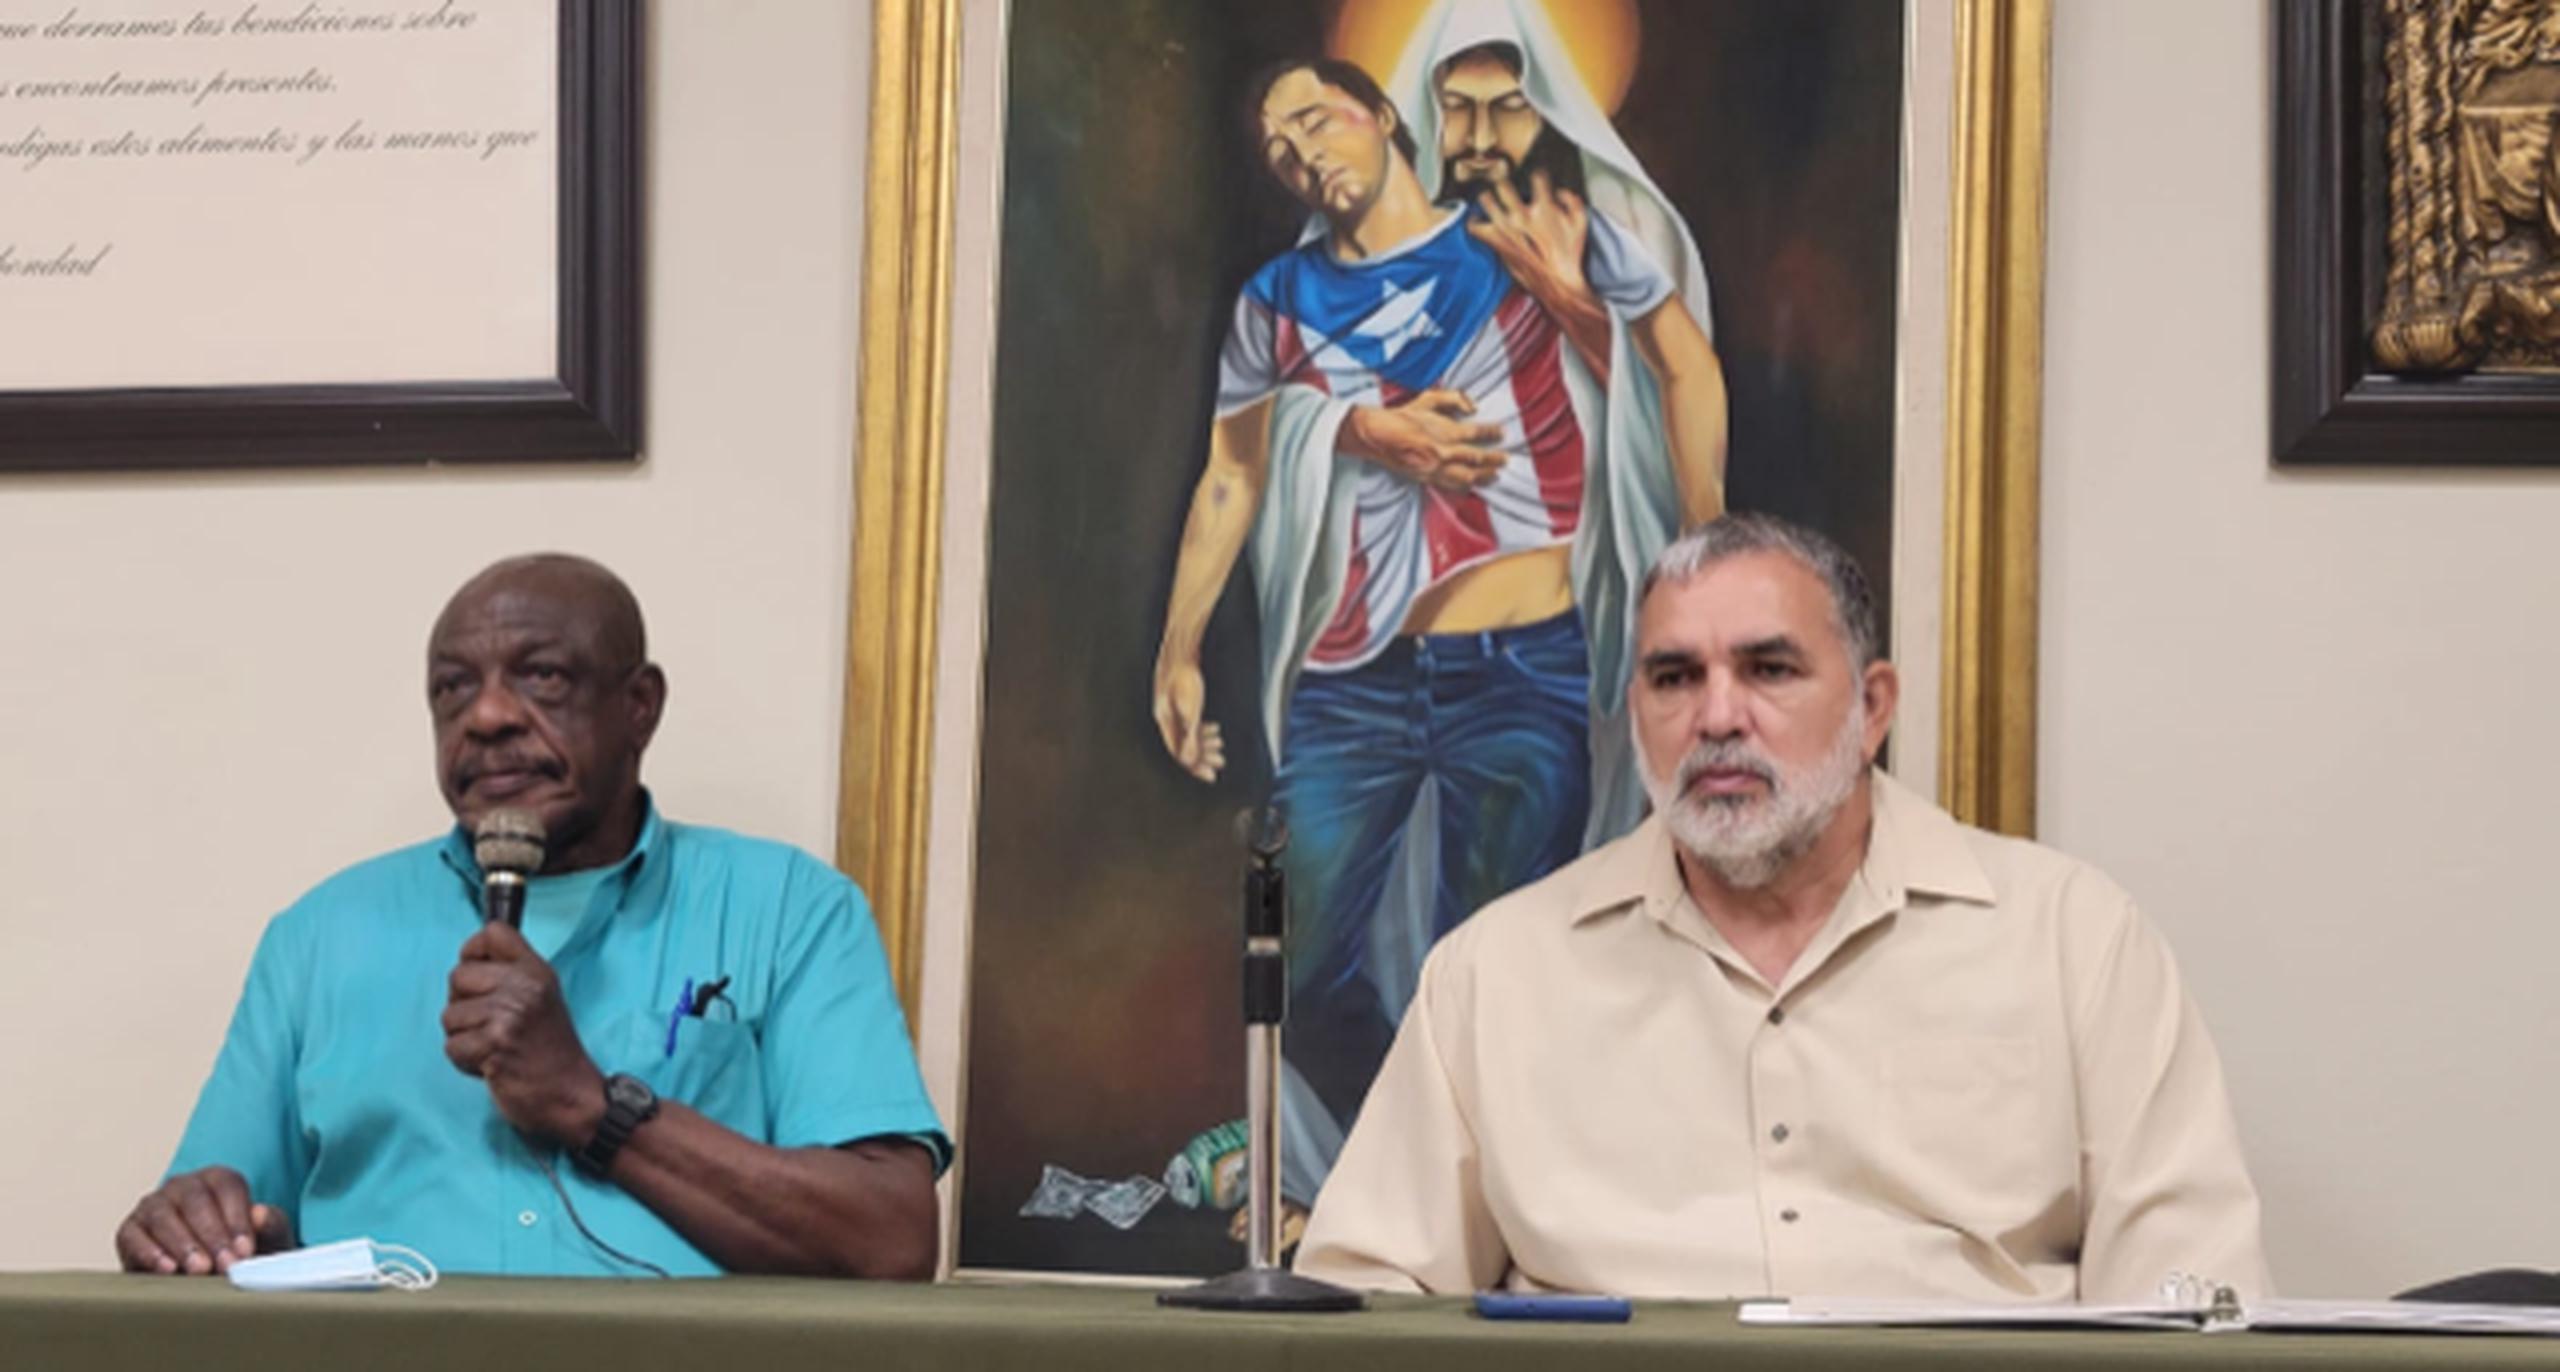 Juan De Dios Videau Soler y Luis Cruz, funcionarios del hogar, explicaron los procesos que han realizado para paliar la situación económica que enfrentan.